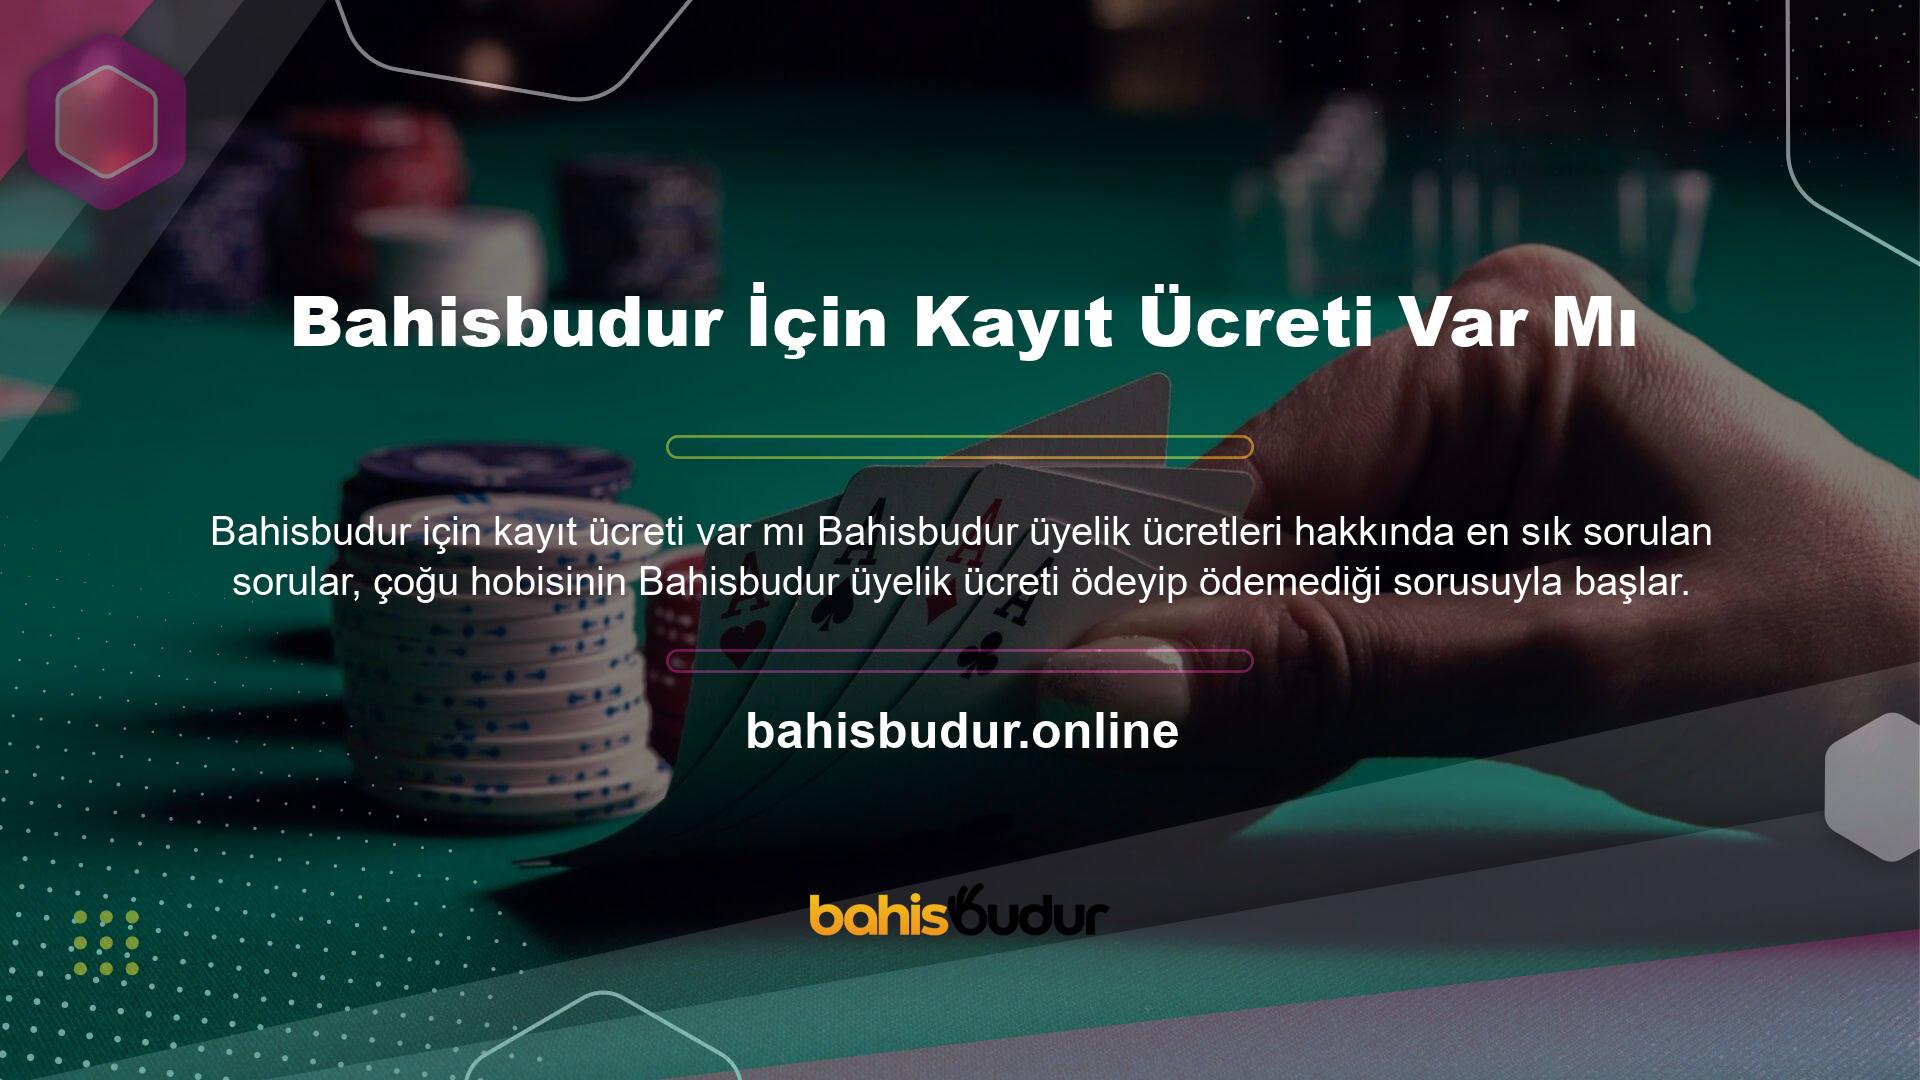 Bahisbudur kayıt ücreti var mı? Bu çevrimiçi oyun sitesi, oyunlara yatırım yapmak dışında tüm hizmetleri kullanıcılara ve oyun meraklılarına ücretsiz olarak sunmaktadır